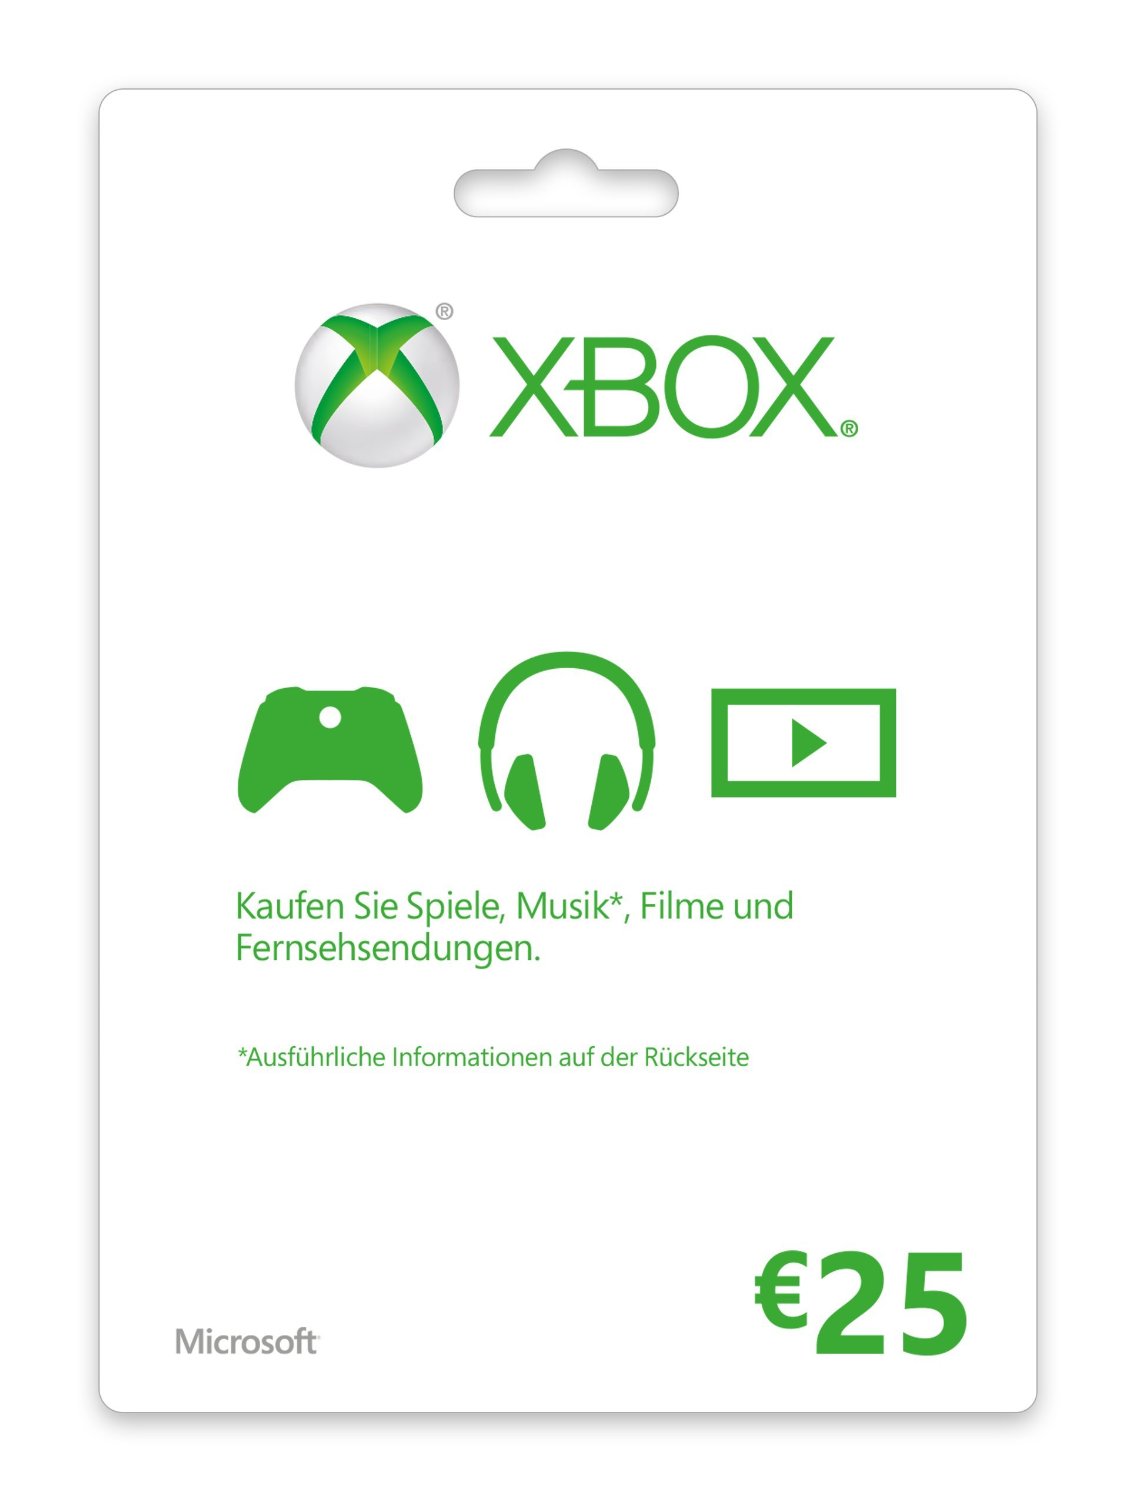 Guthaben kaufen online Code - Live Xbox Email sofort 25 Card Euro per